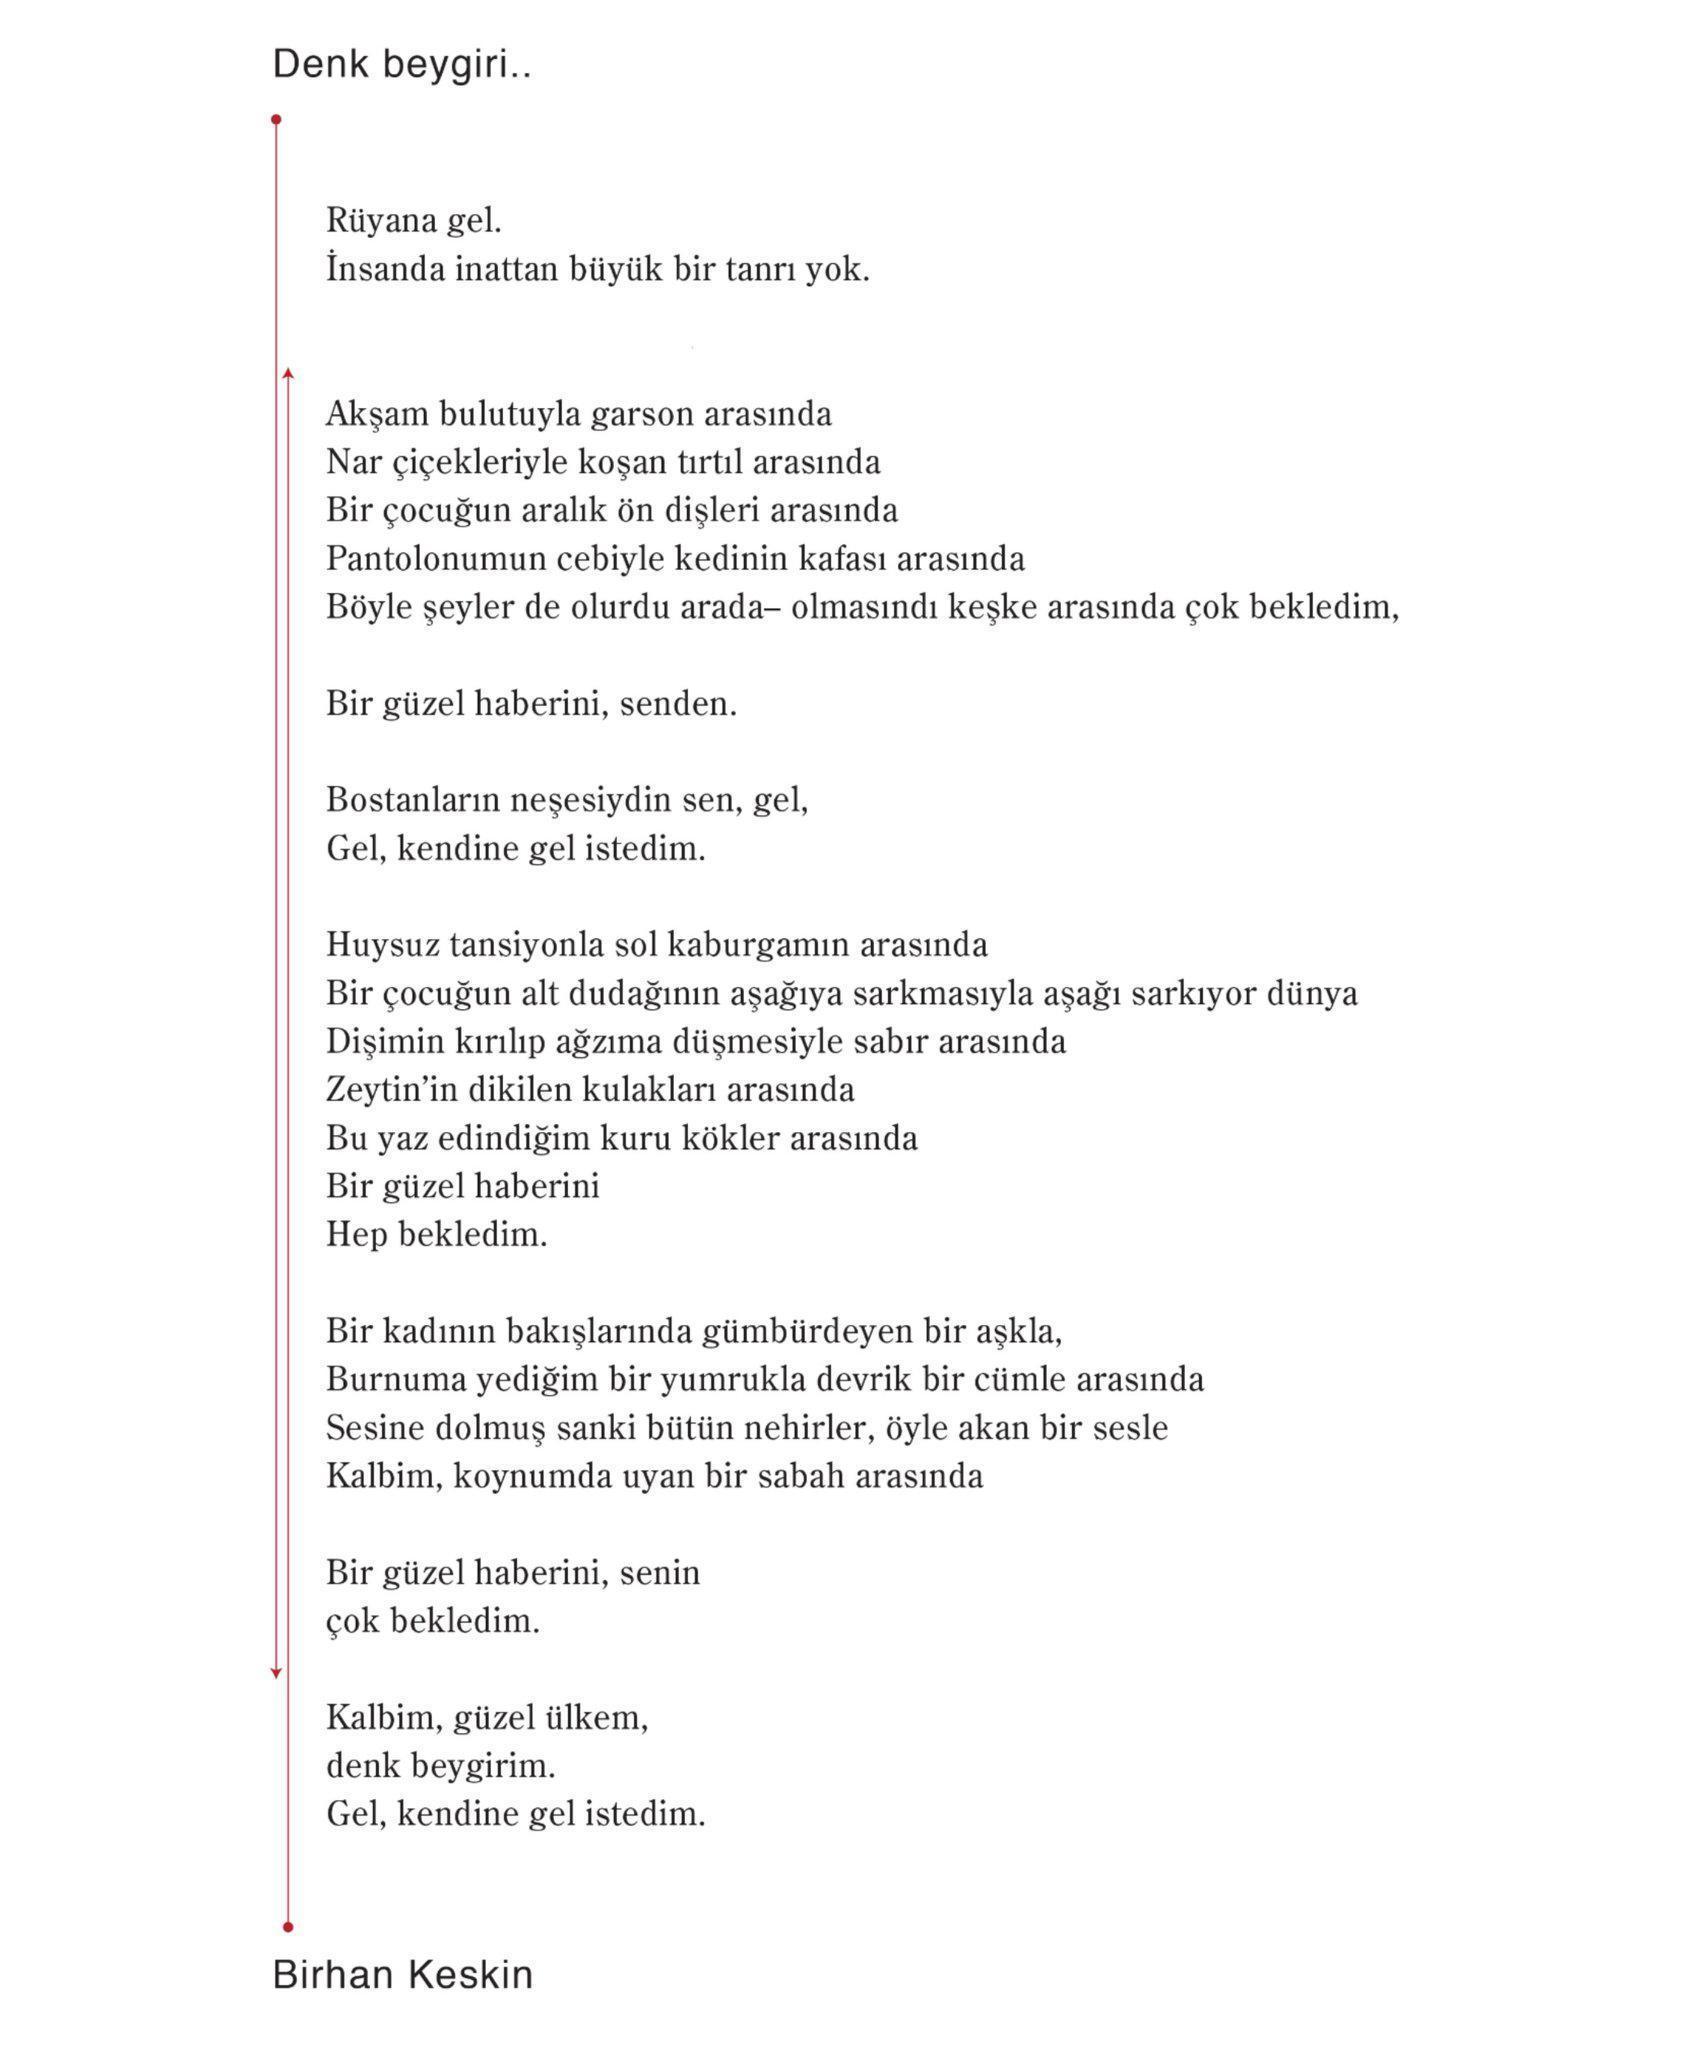 Birhan Keskinden yeni yıl hediyesi: 4 yıl aradan sonra yeni bir şiir